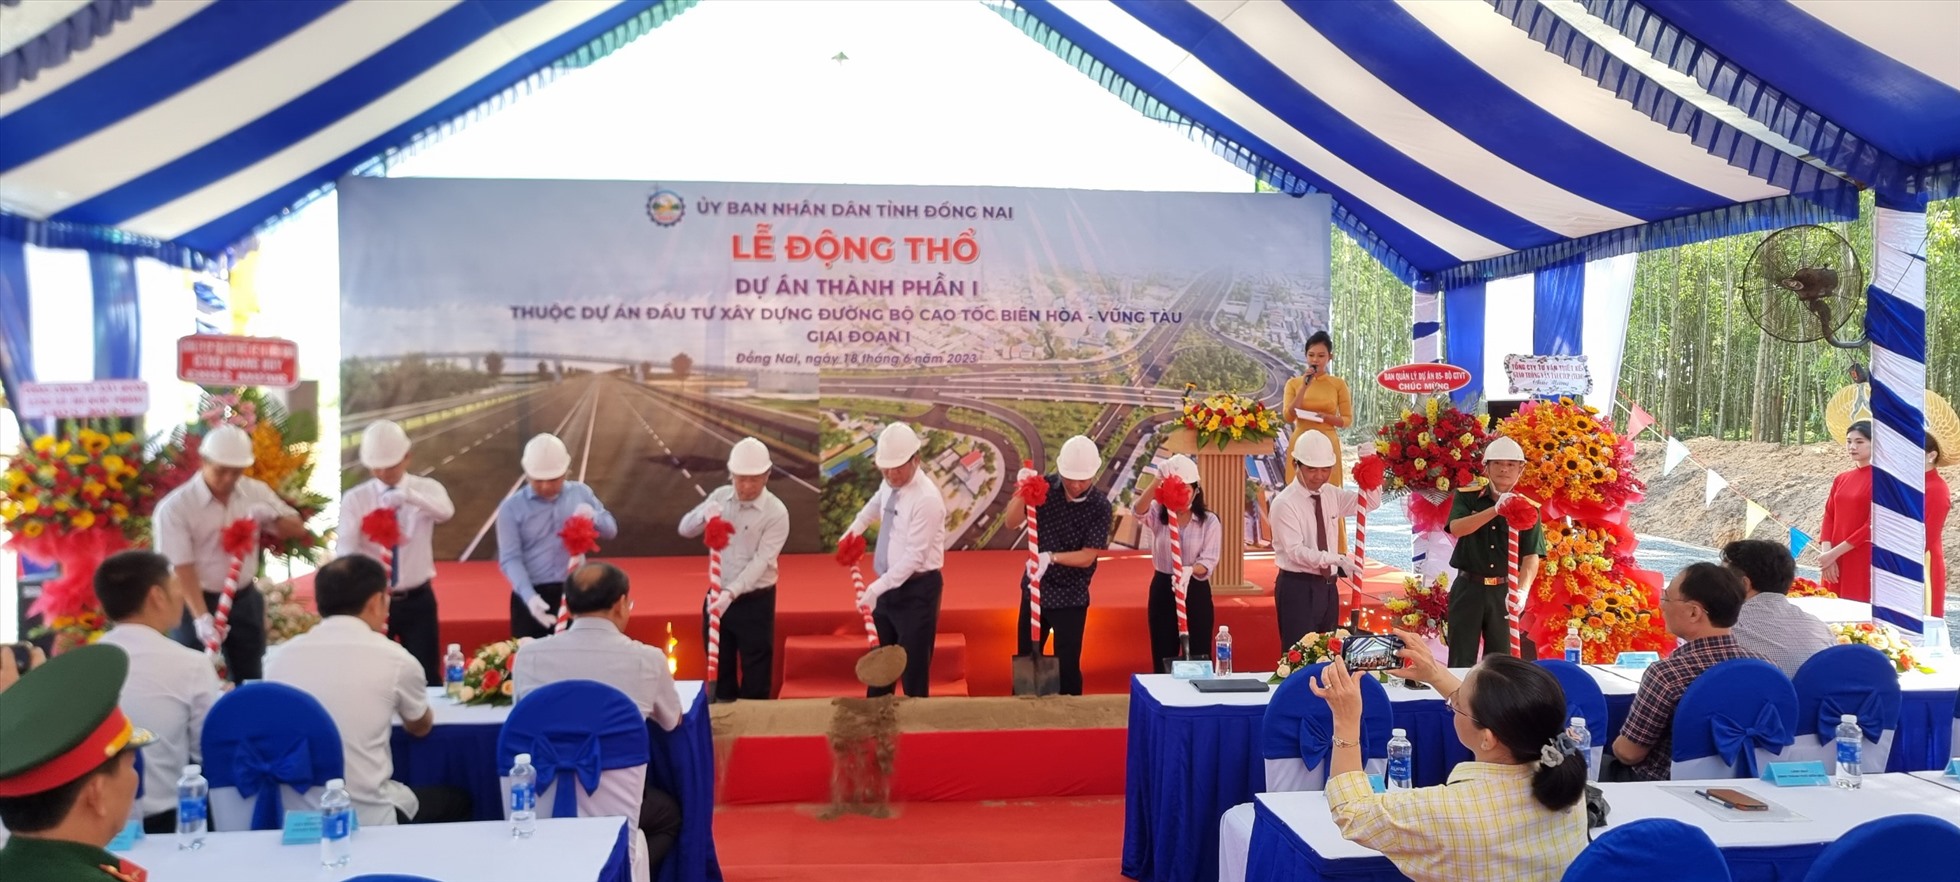 UBND tỉnh Đồng Nai cũng khởi công dự án thành phần 1 thuộc dự án Đầu tư xây dựng đường bộ cao tốc Biên Hòa - Vũng Tàu giai đoạn 1. Ảnh: Hà Anh Chiến